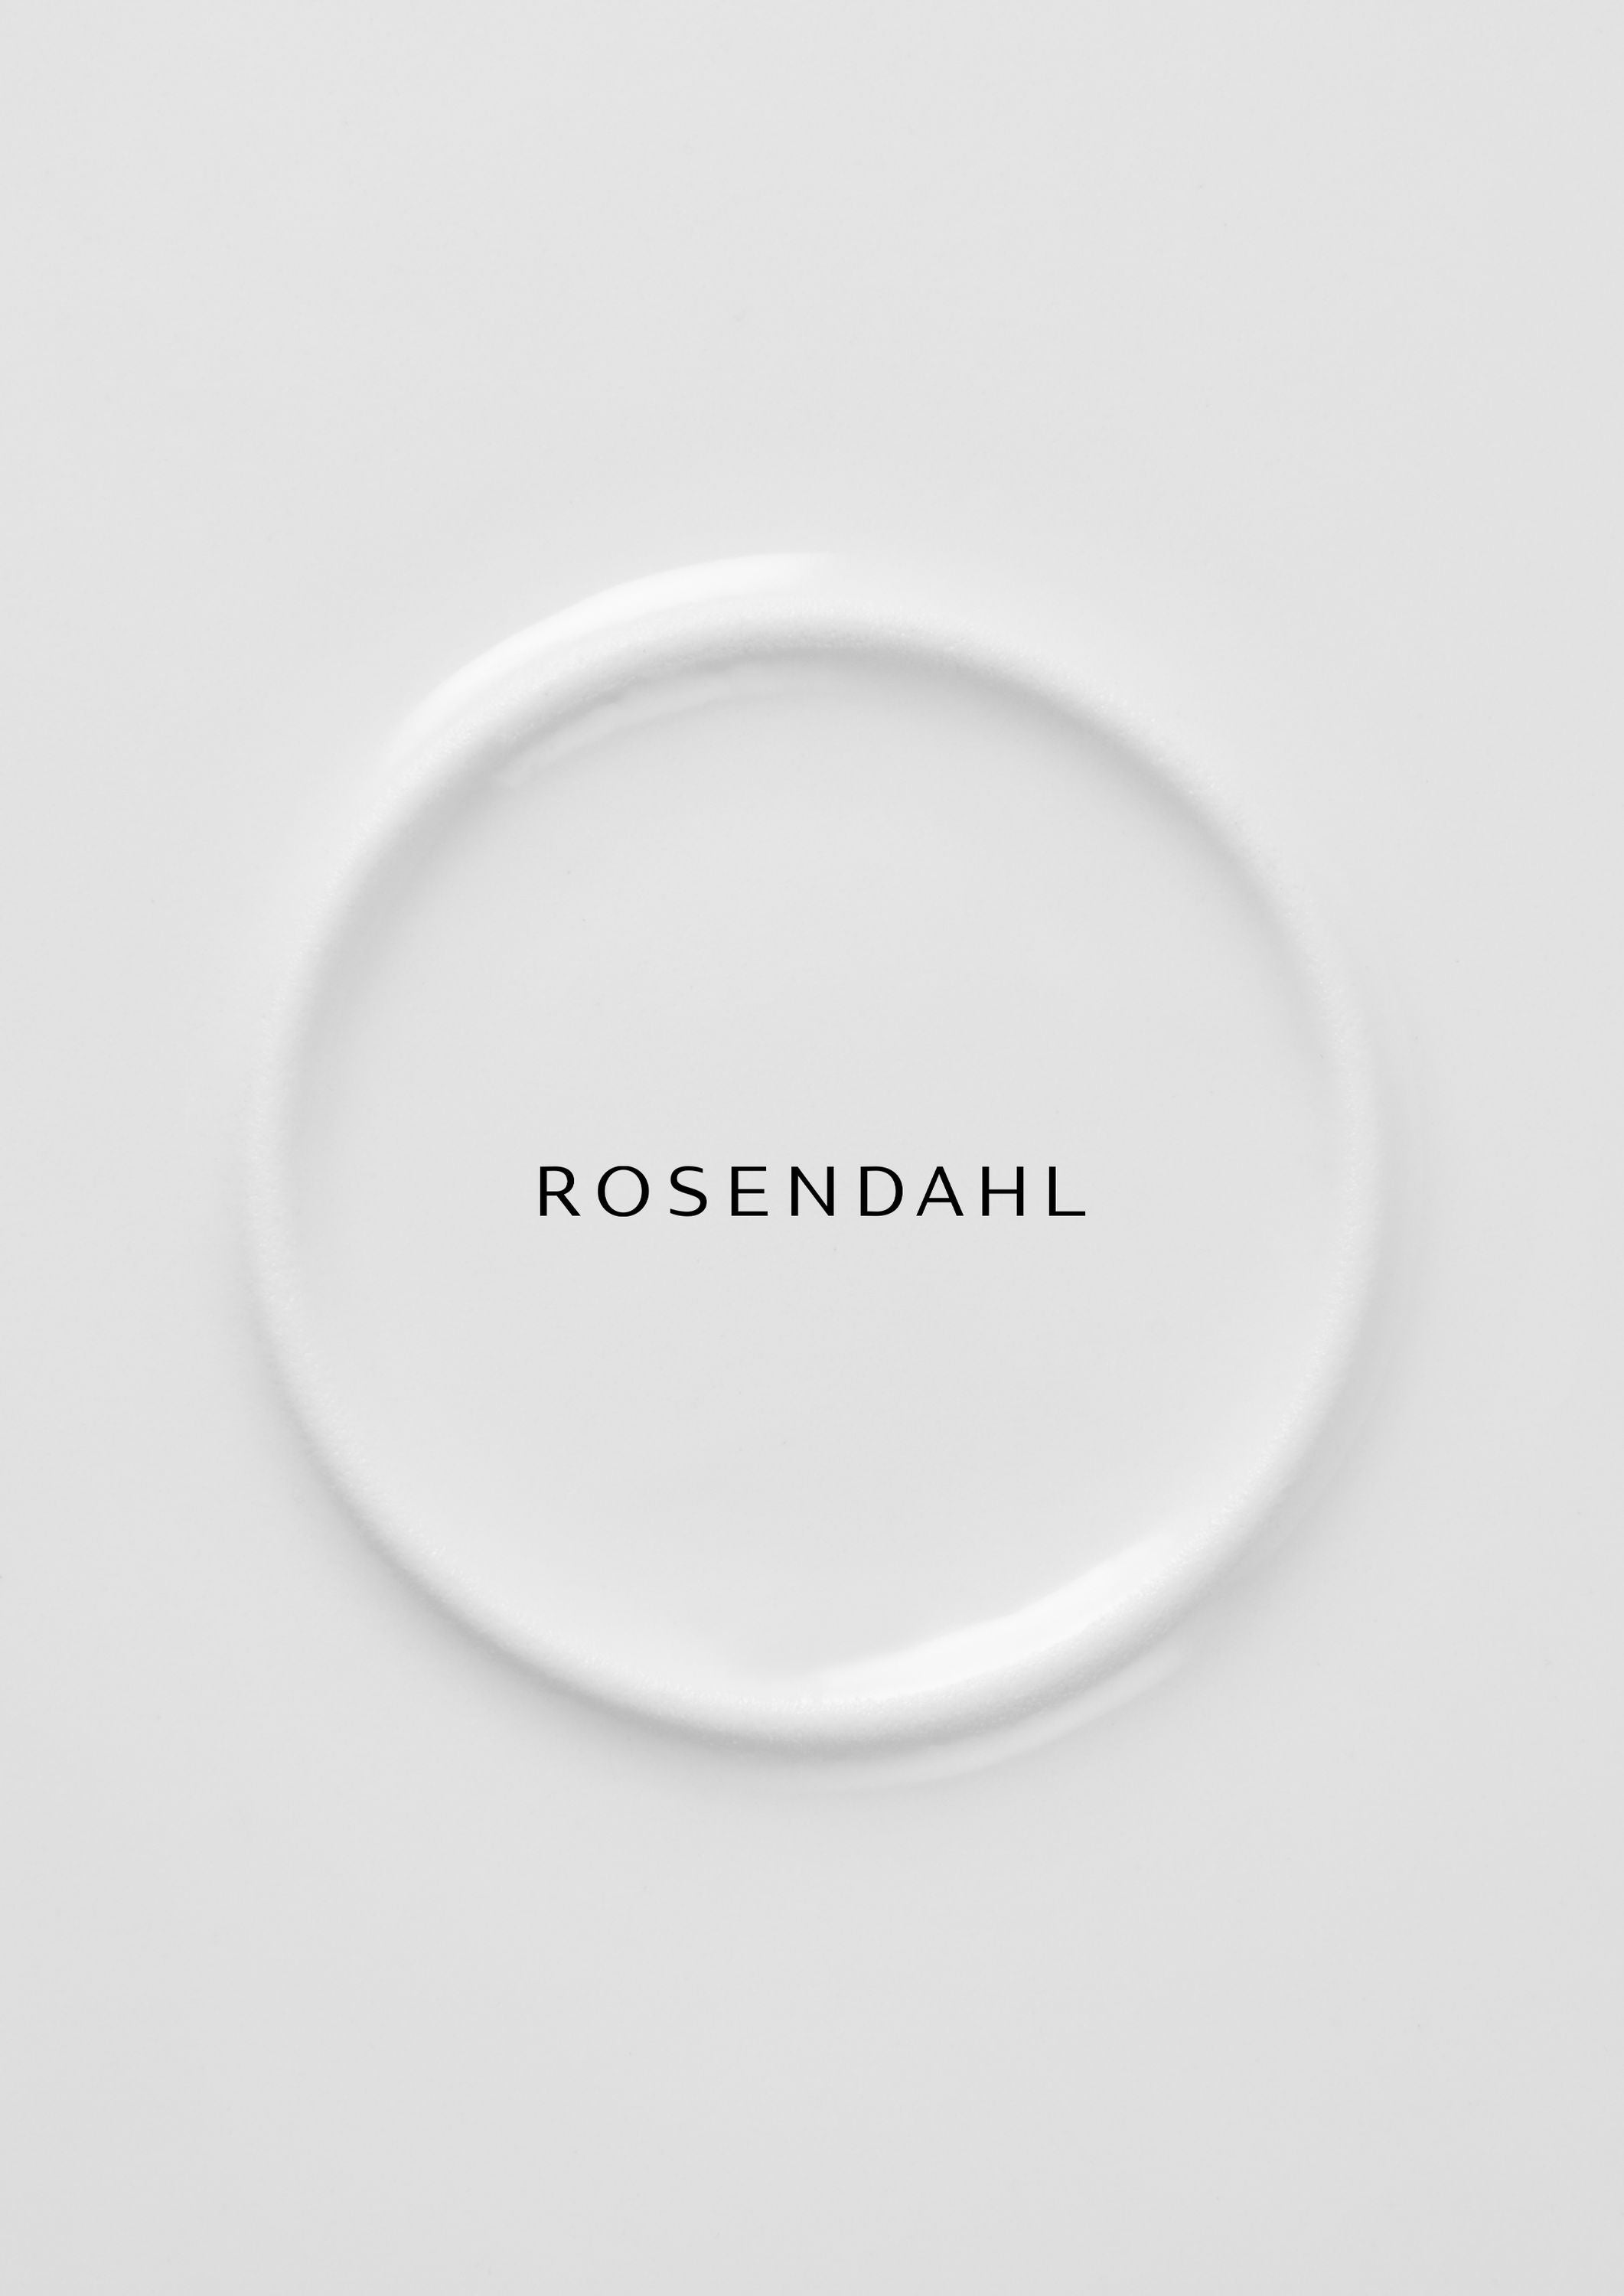 Rosendahl GC Essentials Cena Pate Ø25 cm White 4 PC.